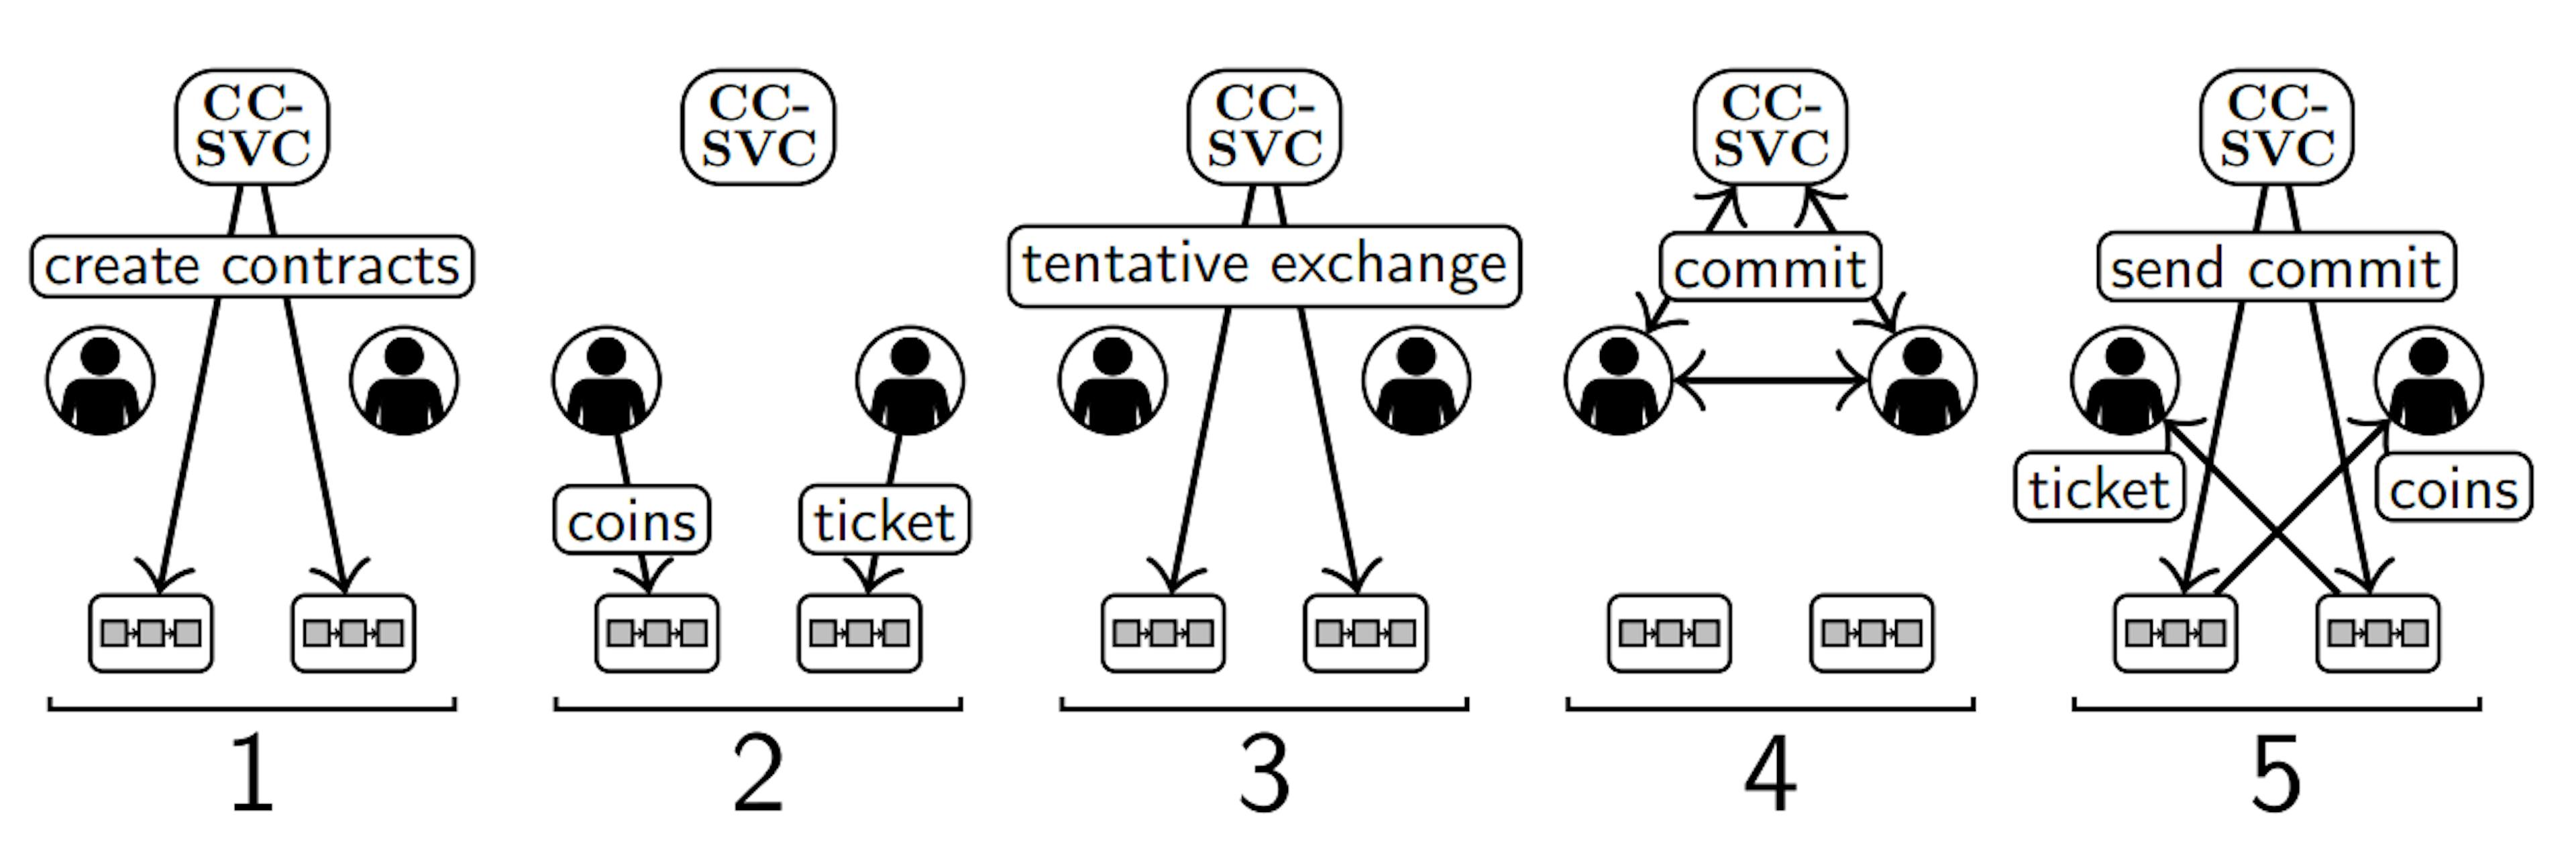 Şekil 2. Bir CC-SVC (üst), iki kullanıcı (orta) ve iki blok zincirinin (altta) olduğu bir ortamda Bölüm II-B'nin beş adımının gösterimi. Kafka ağı gösterilmiyor.